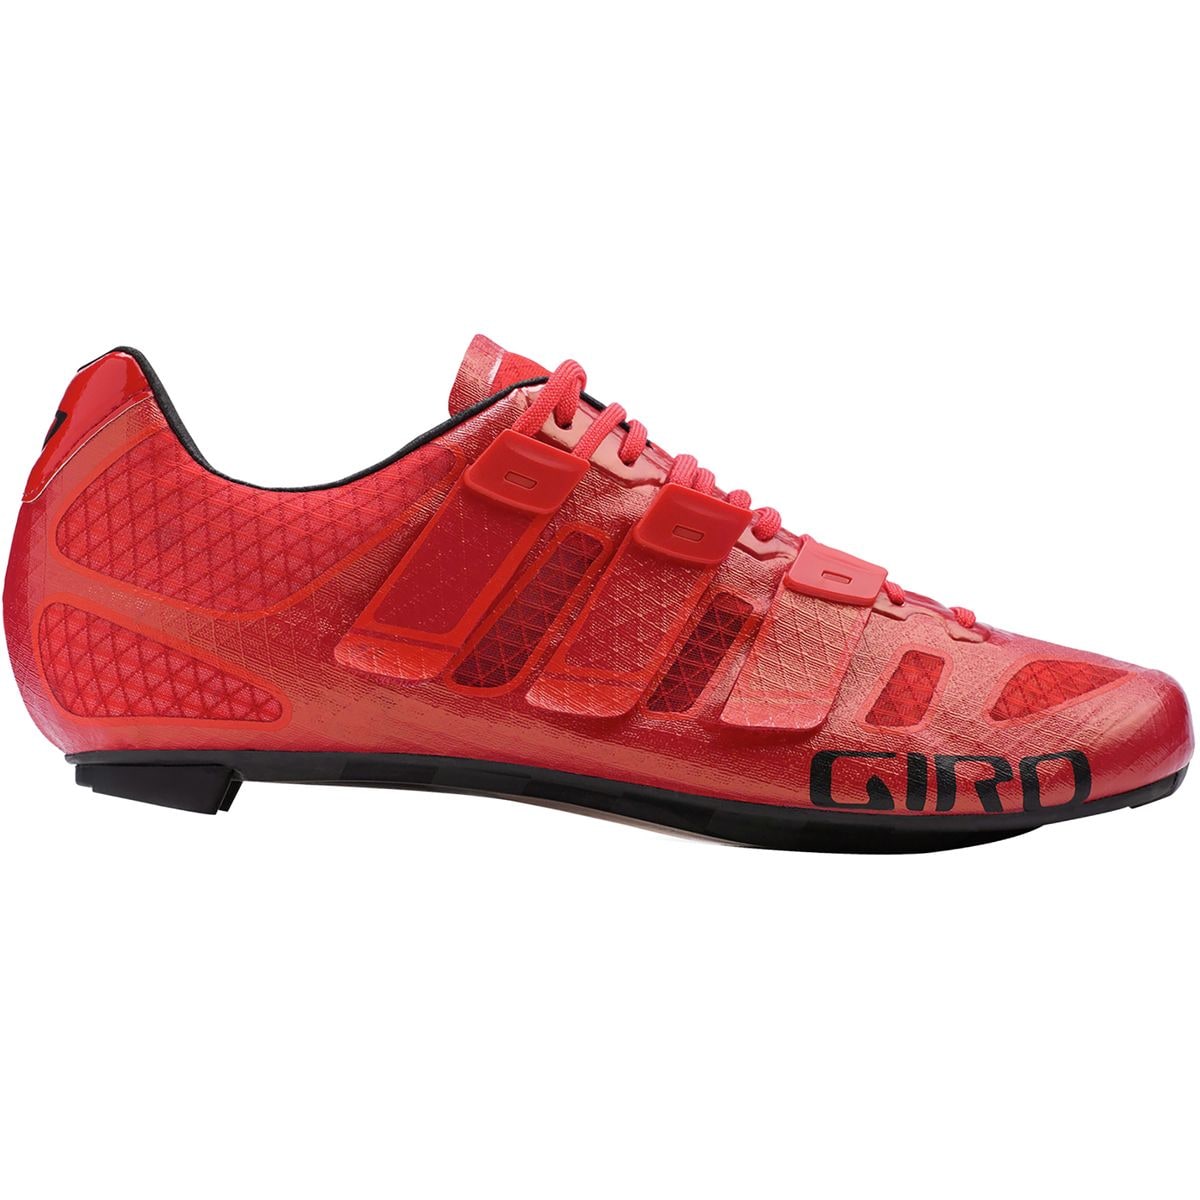 Giro Prolight Techlace shoe review 